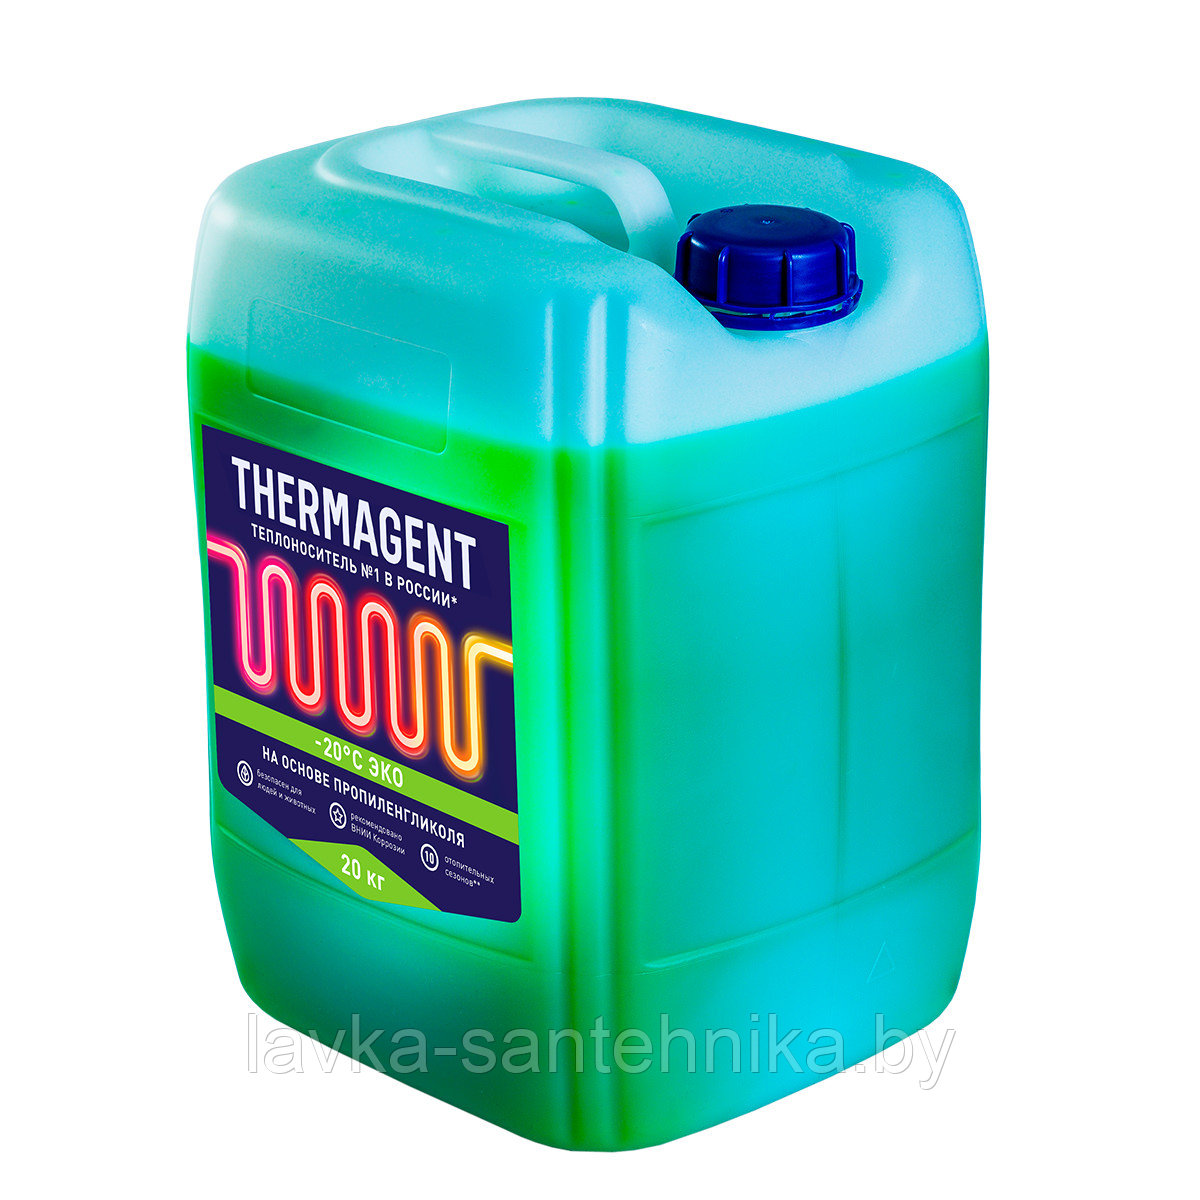 Теплоноситель Thermagent -20 C ЭКО, 20 кг (срок службы: 10 сезонов)